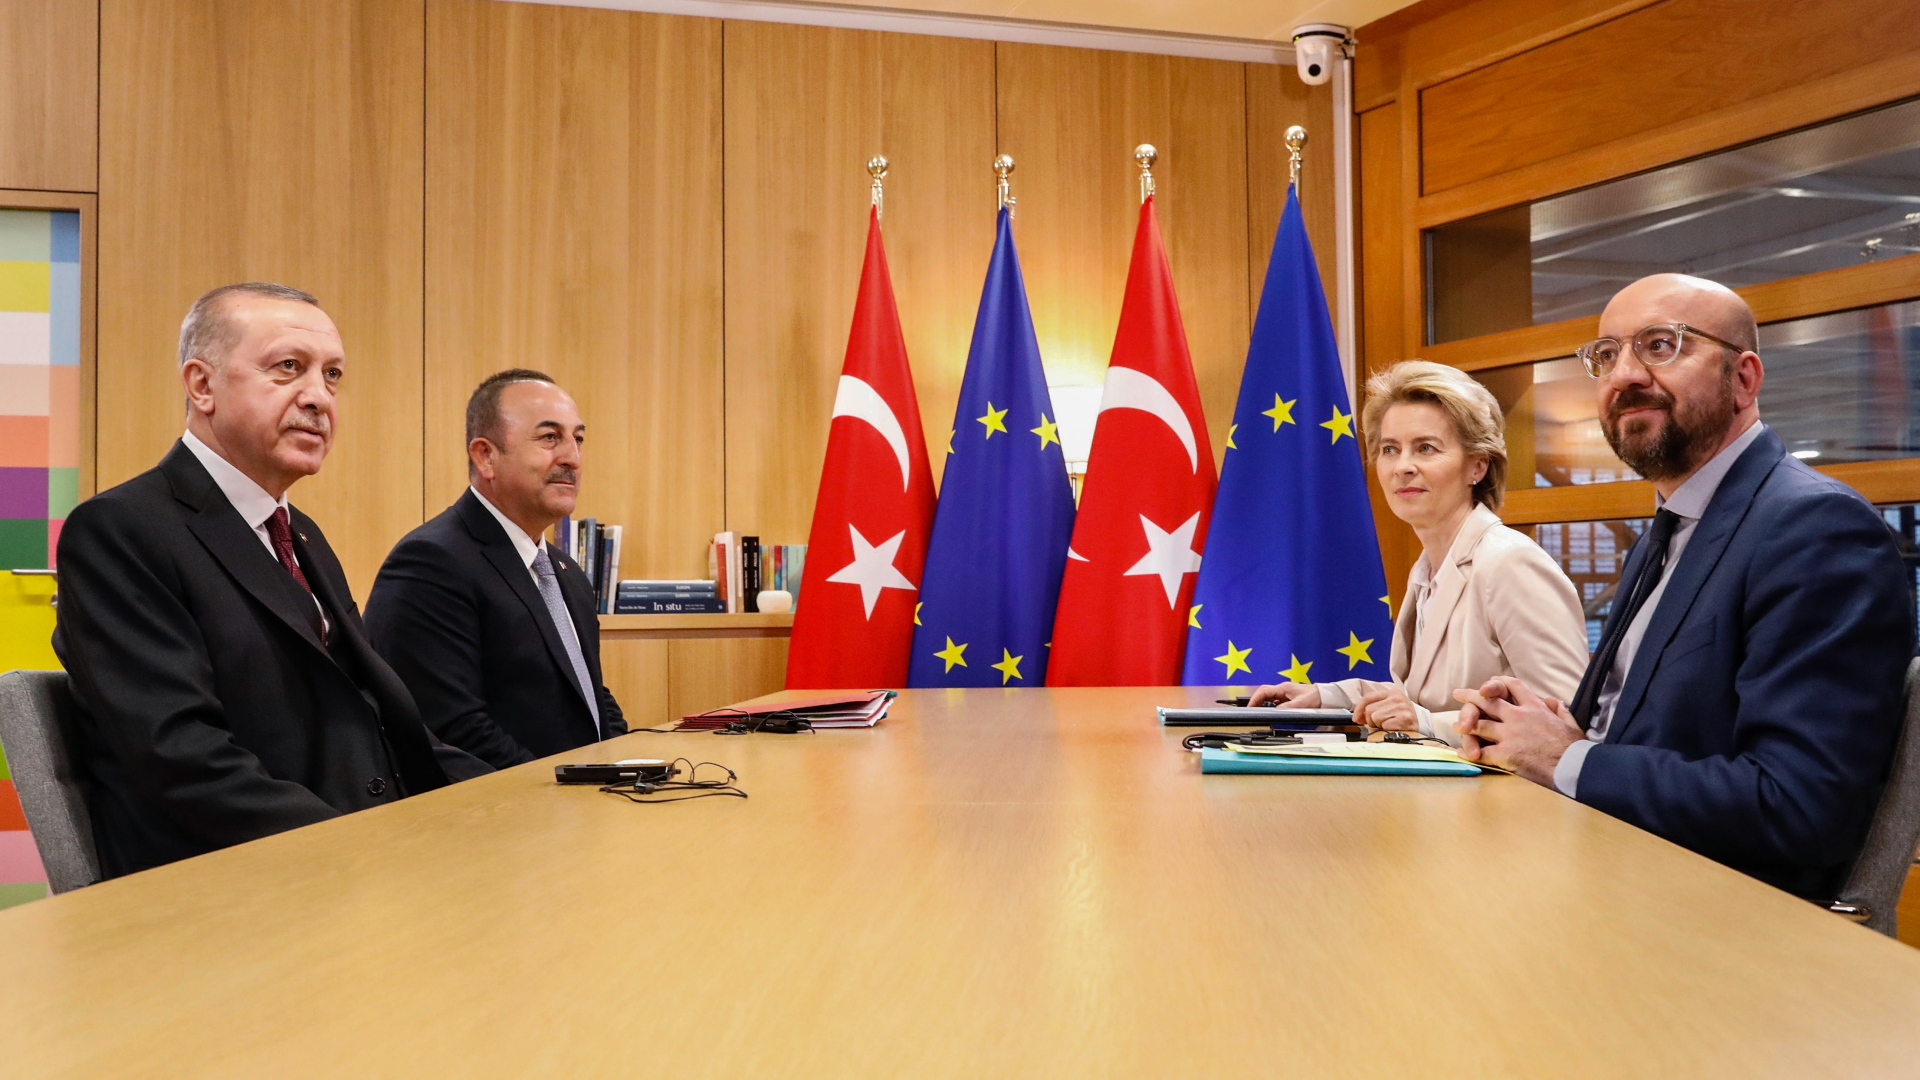 Charles Michel (r-l), Präsident des Europäischen Rates, Ursula von der Leyen, Präsidentin der Europäischen Kommission, Mevlut Cavusoglu, Außenminister der Türkei und Recep Tayyip Erdogan, Präsident der Türkei kommen im Rahmen des Treffens der Staats- und Regierungschefs der EU und der Türkei zusammen. | dpa